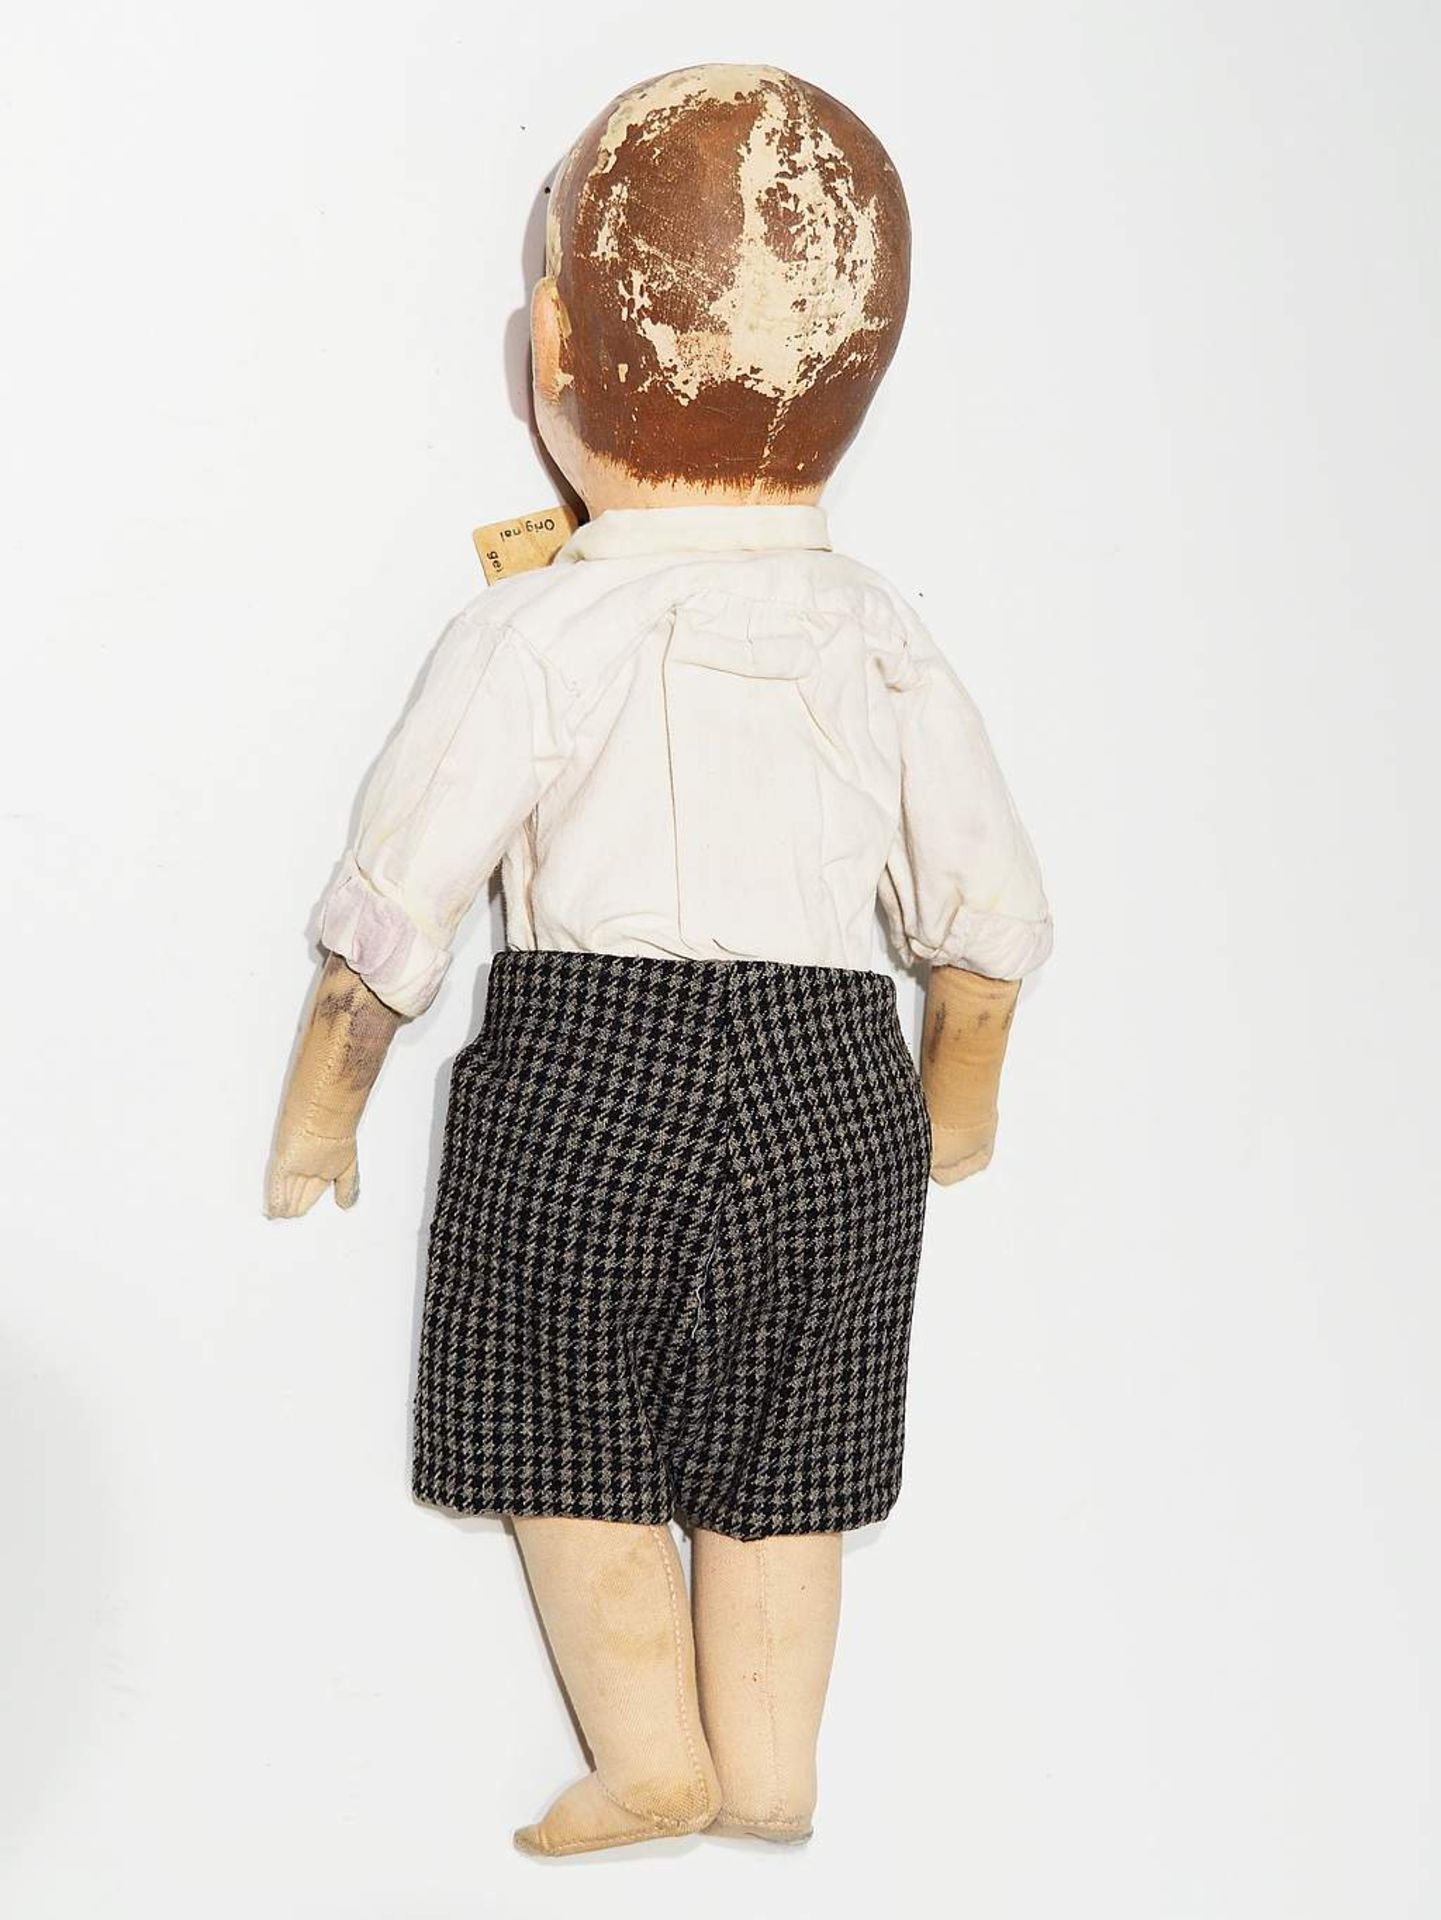 Antike Käthe Kruse Puppe mit original Etikett, wohl um 1920/30. - Image 3 of 5